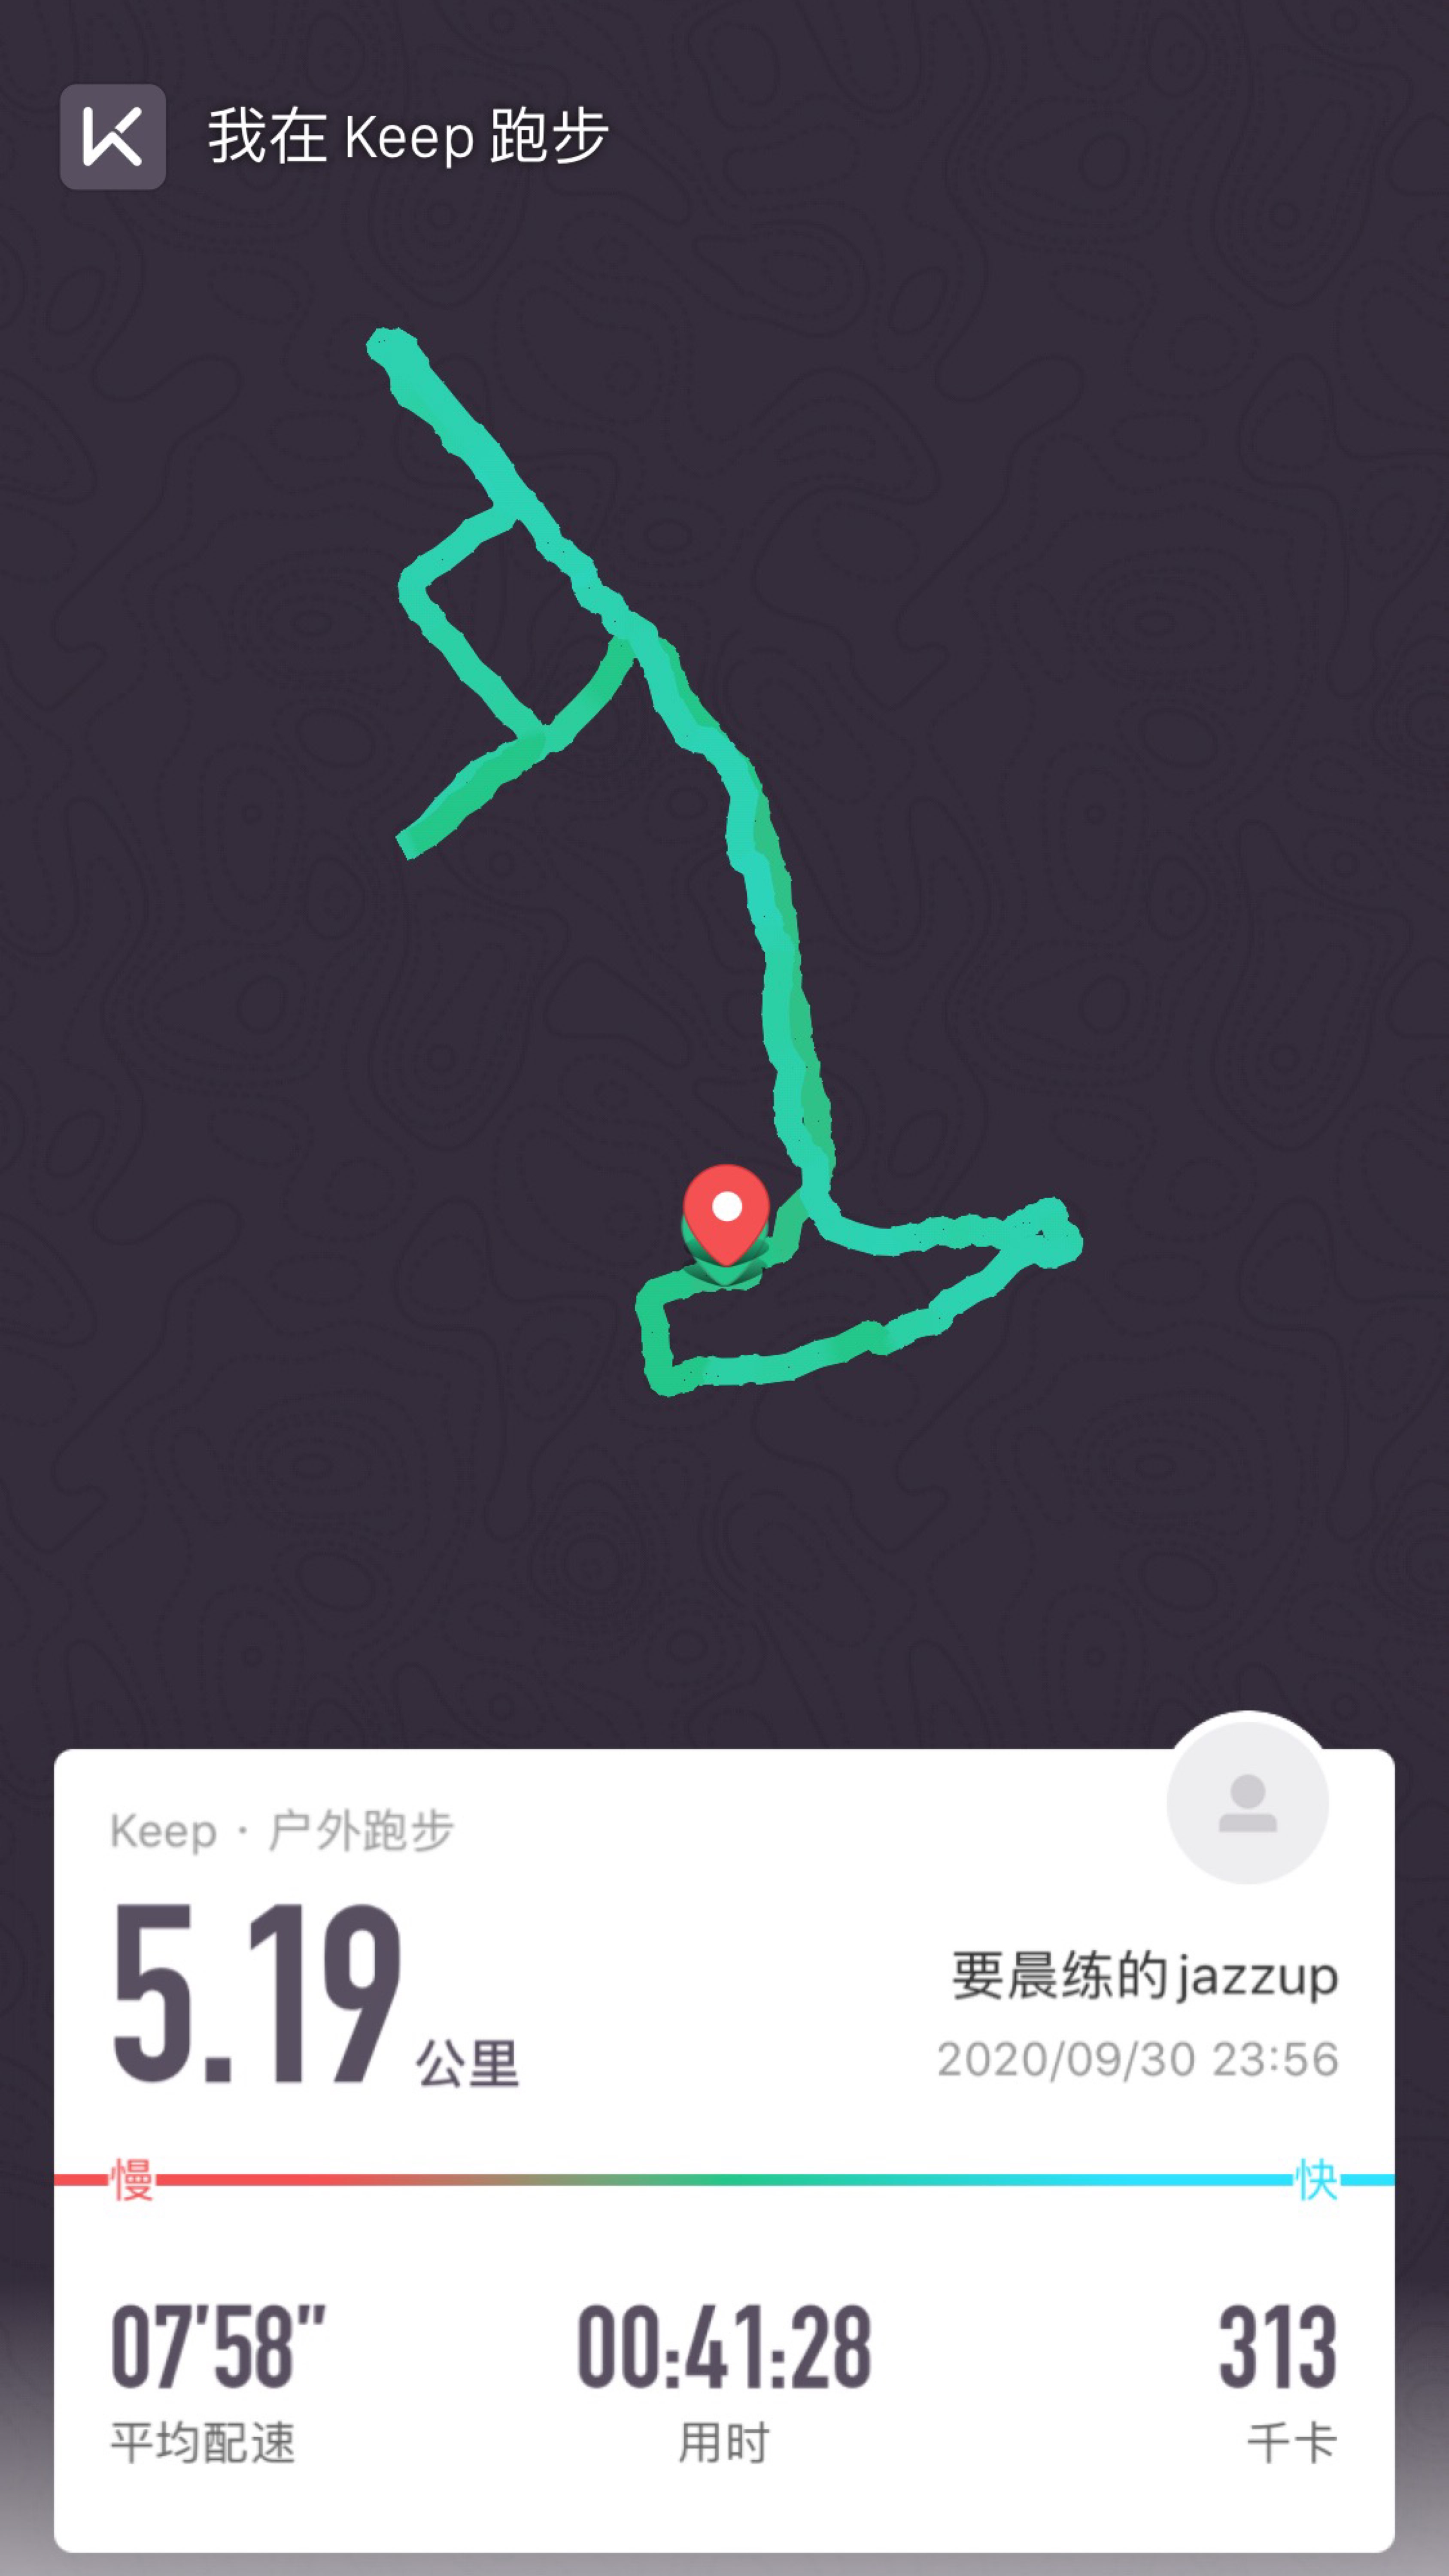 19公里, 41分28秒  获得了点亮广东徽章  获得了跑步14次徽章  获得了